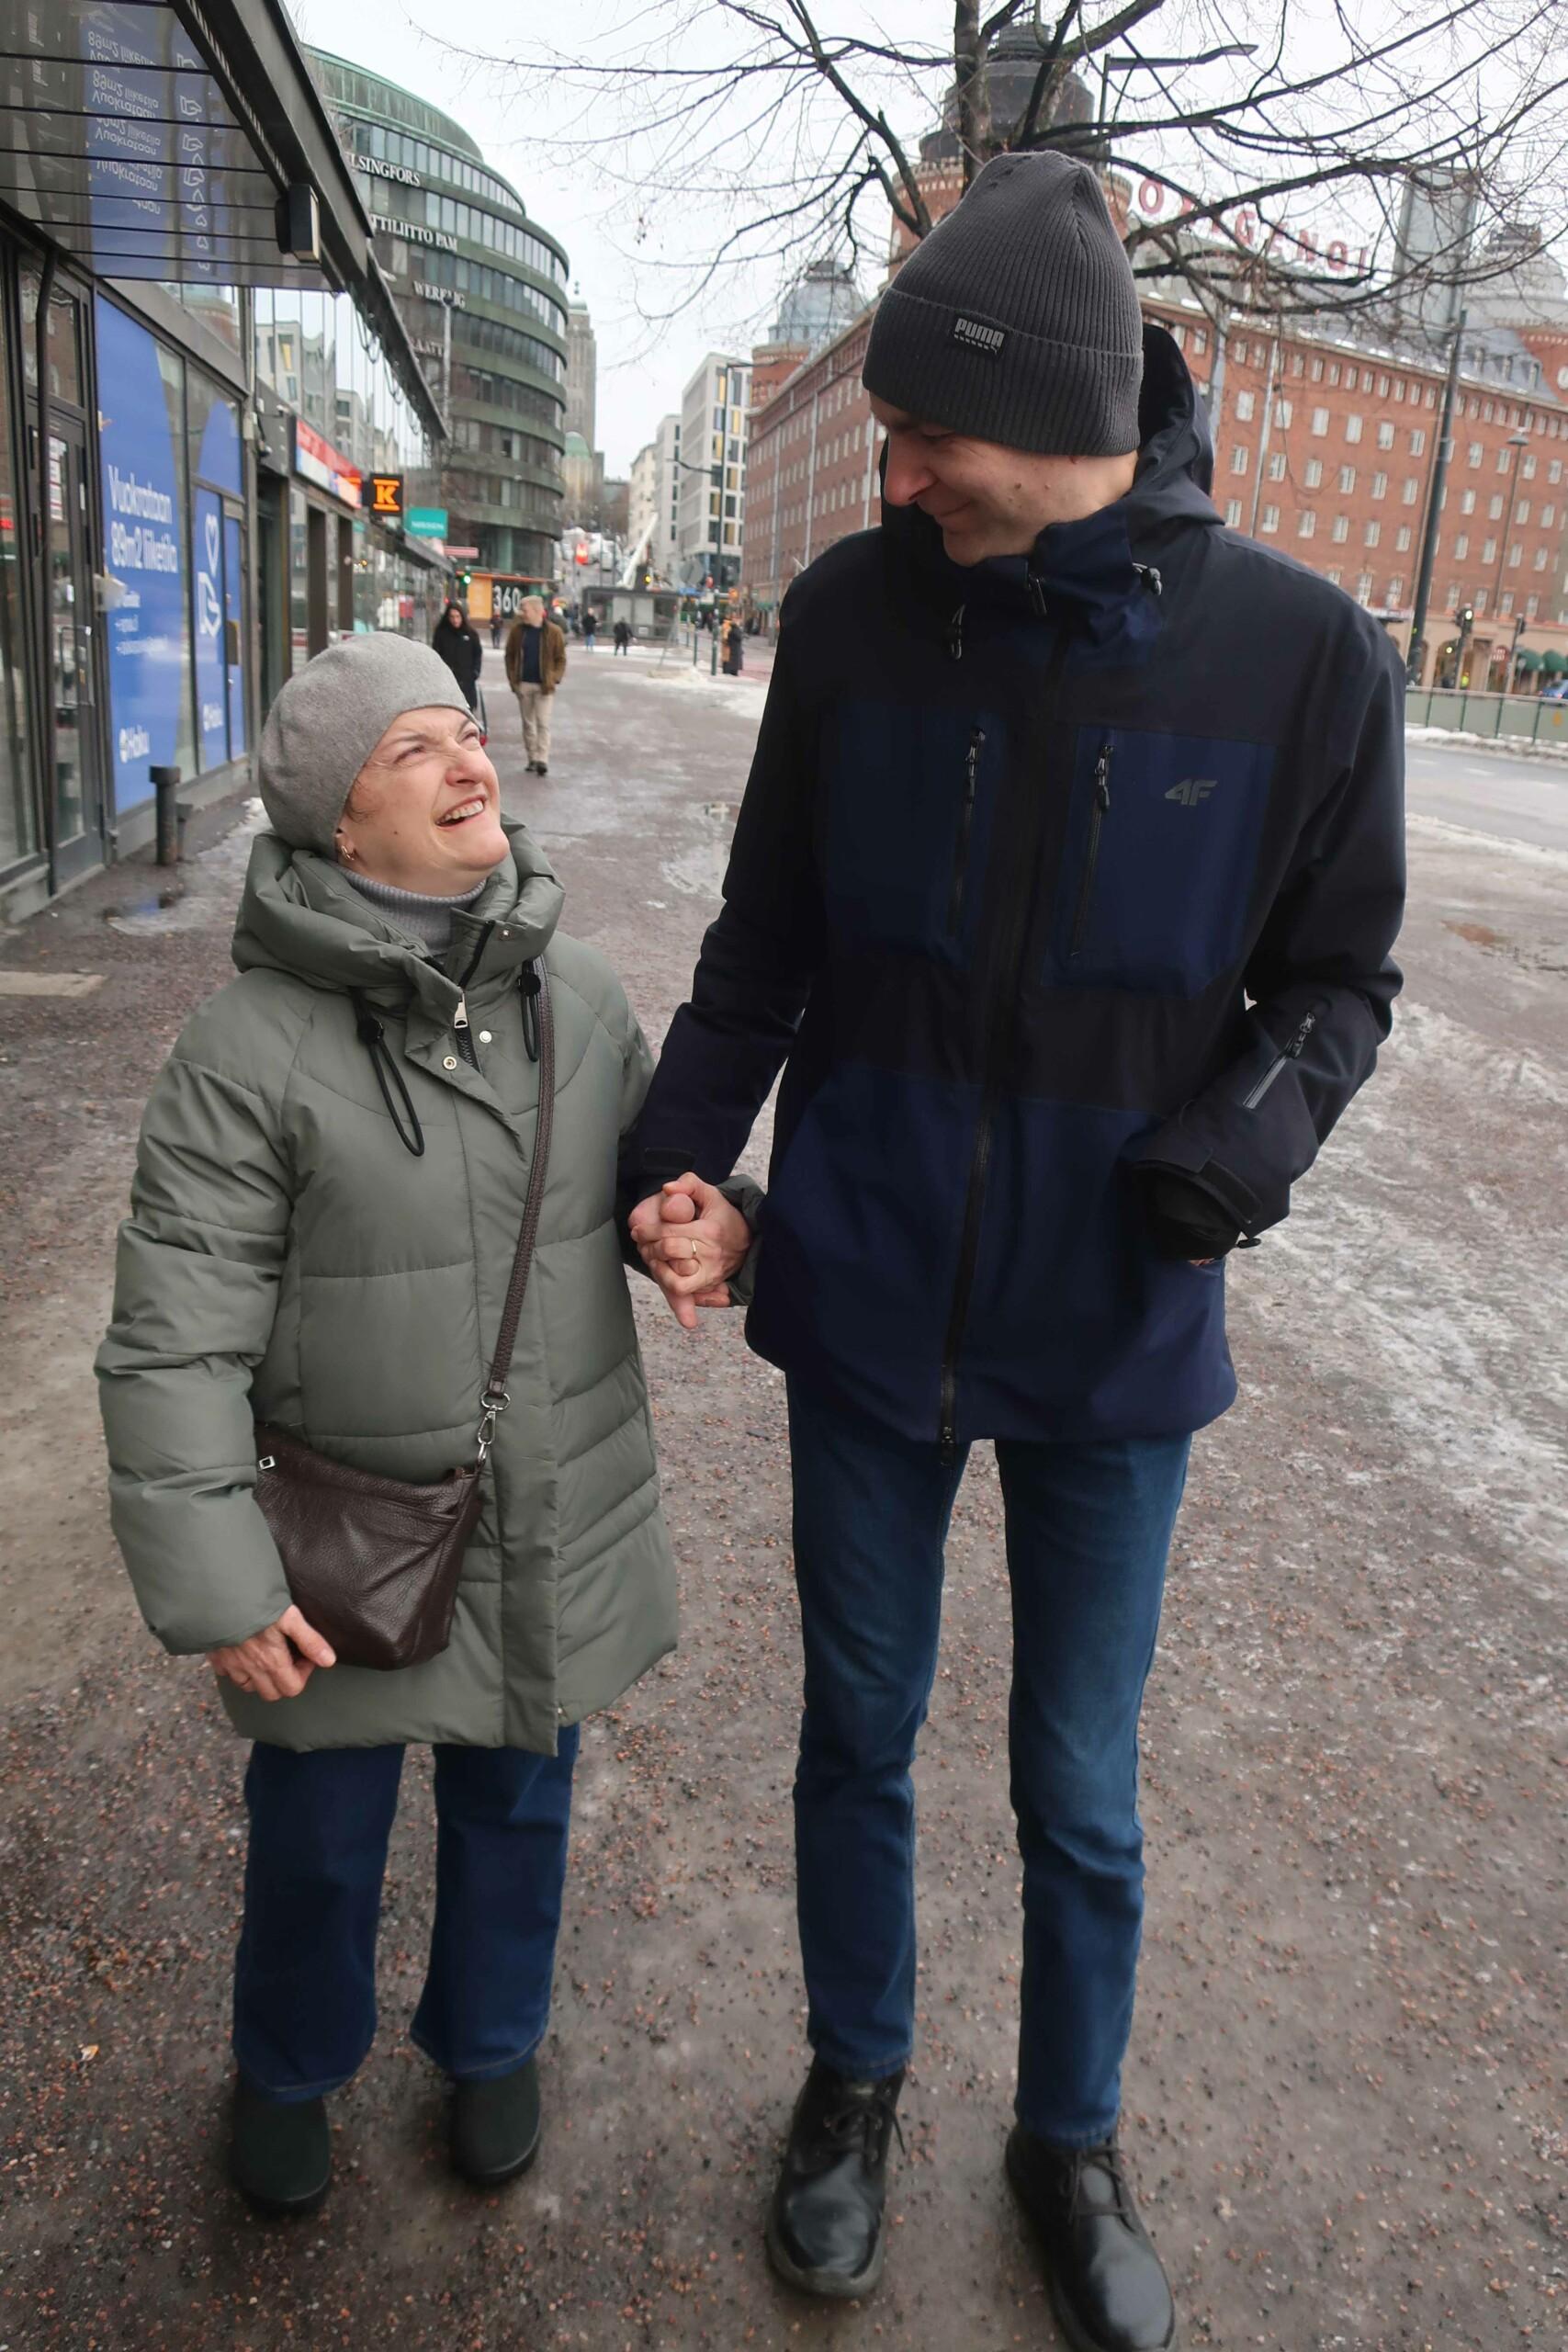 Mies ja nainen pitävät toisistaan kädestä kiinni kadulla katsoen toisiinsa.